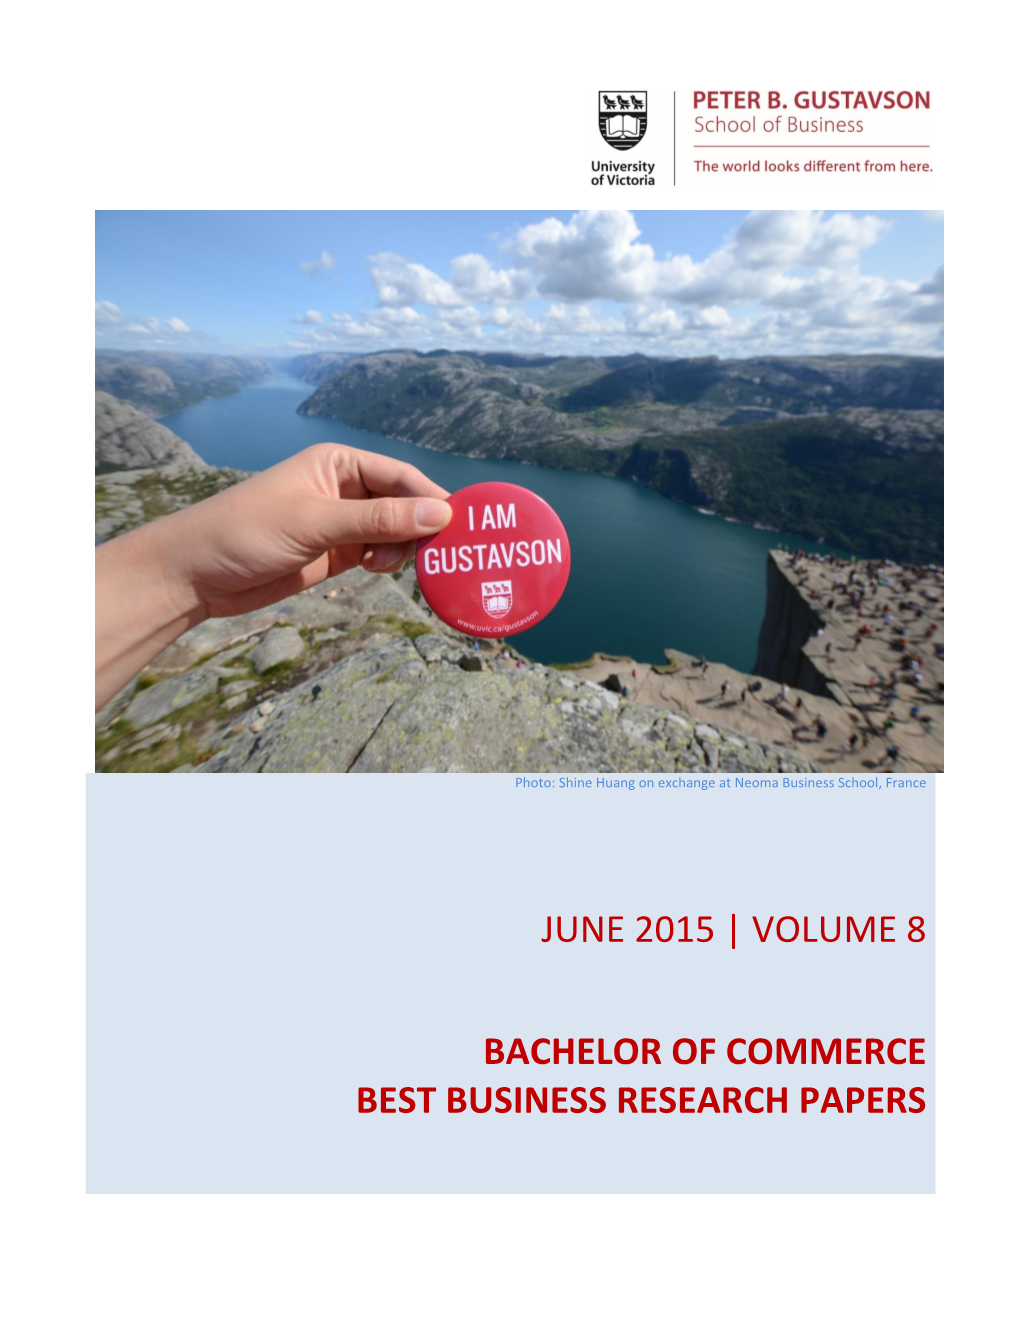 June 2015 | Volume 8 Bachelor of Commerce Best Business